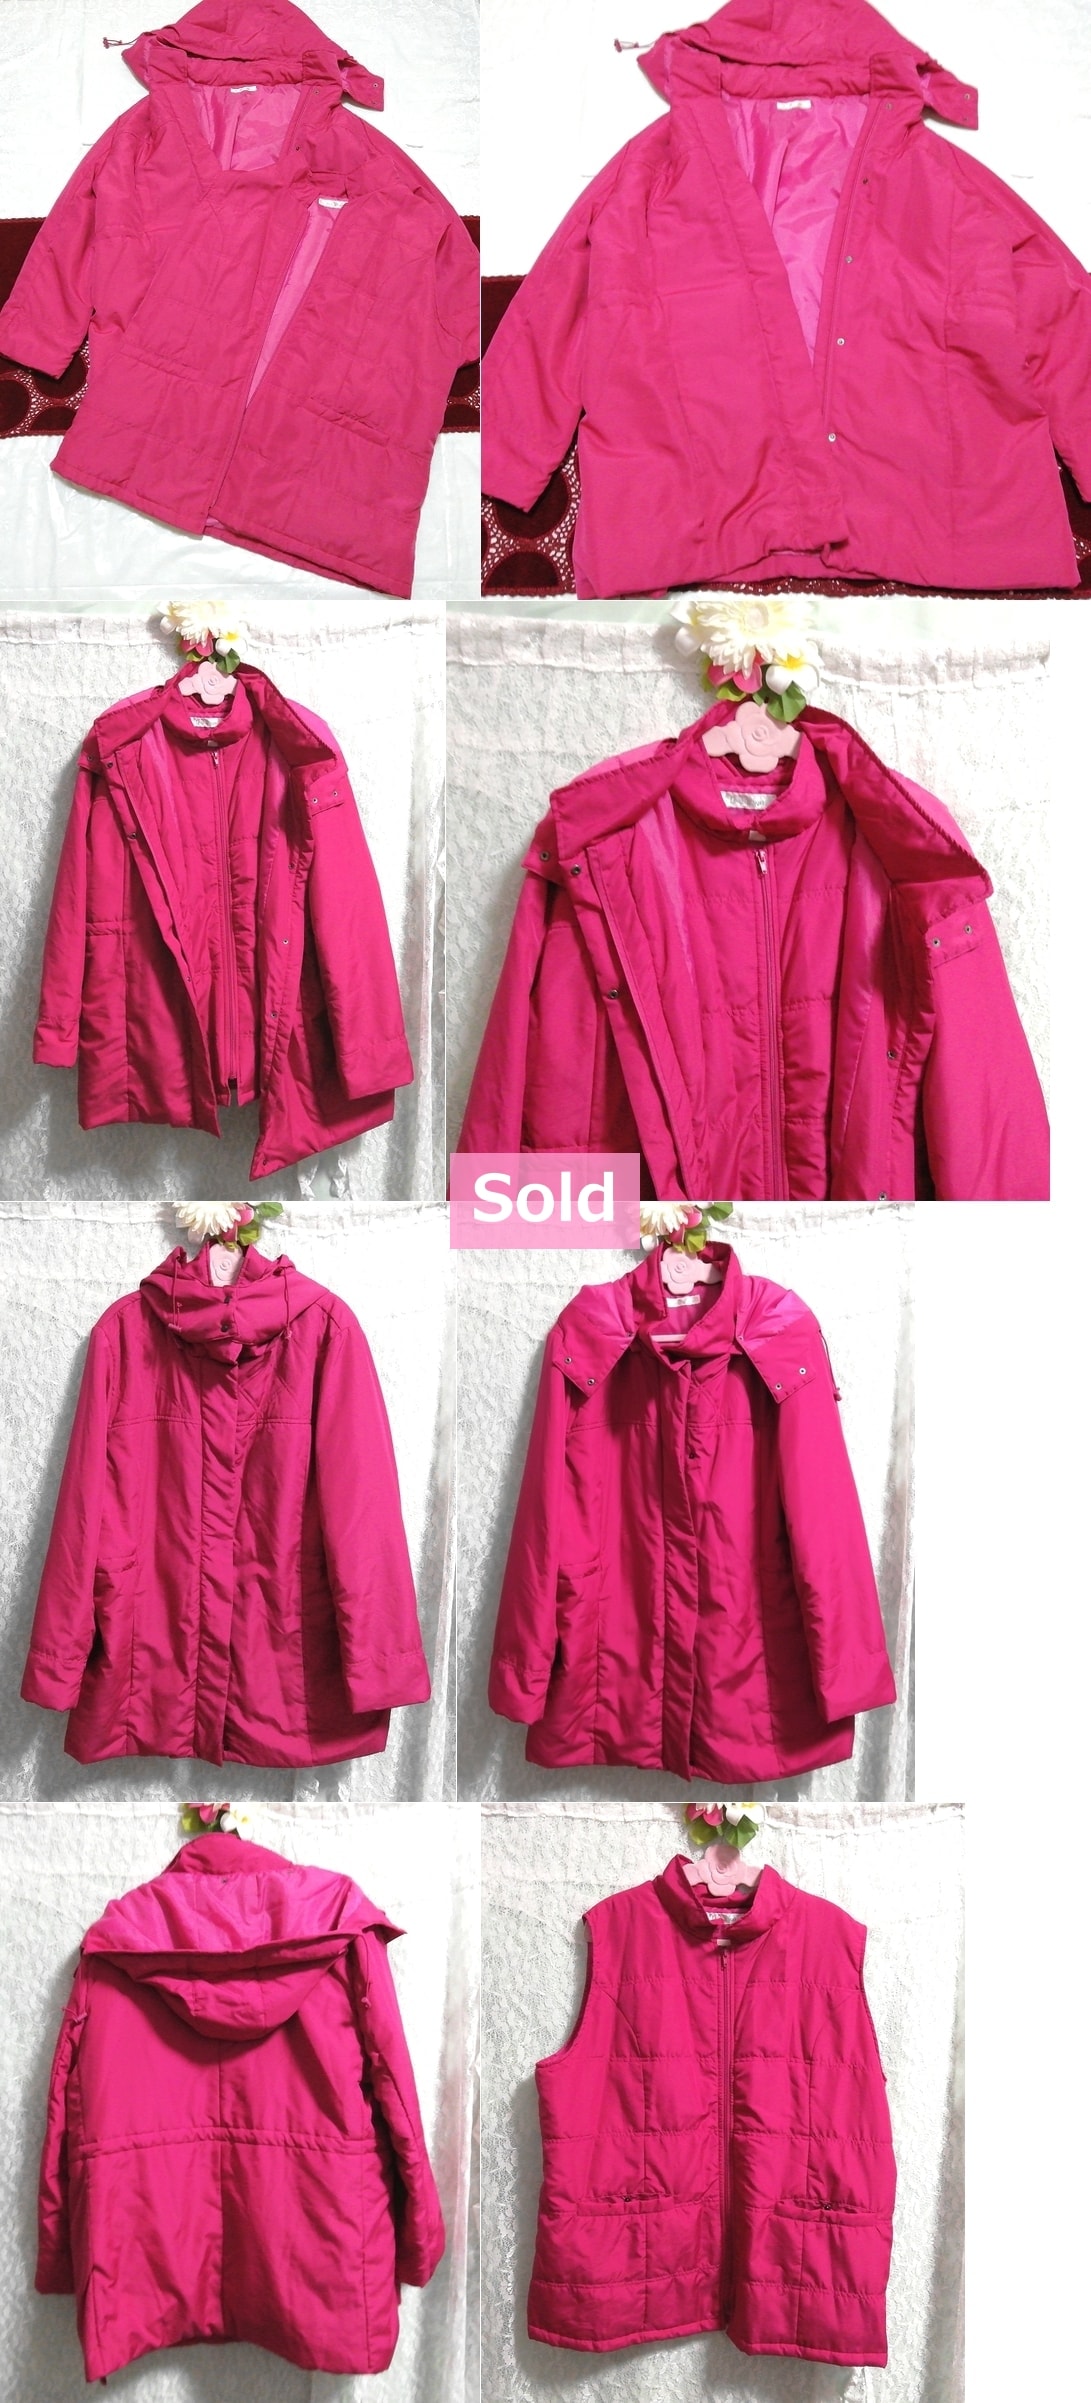 Пурпурно-розовый жилет и пуховик 2 комплекта, пальто и пальто в целом и размер XL или более